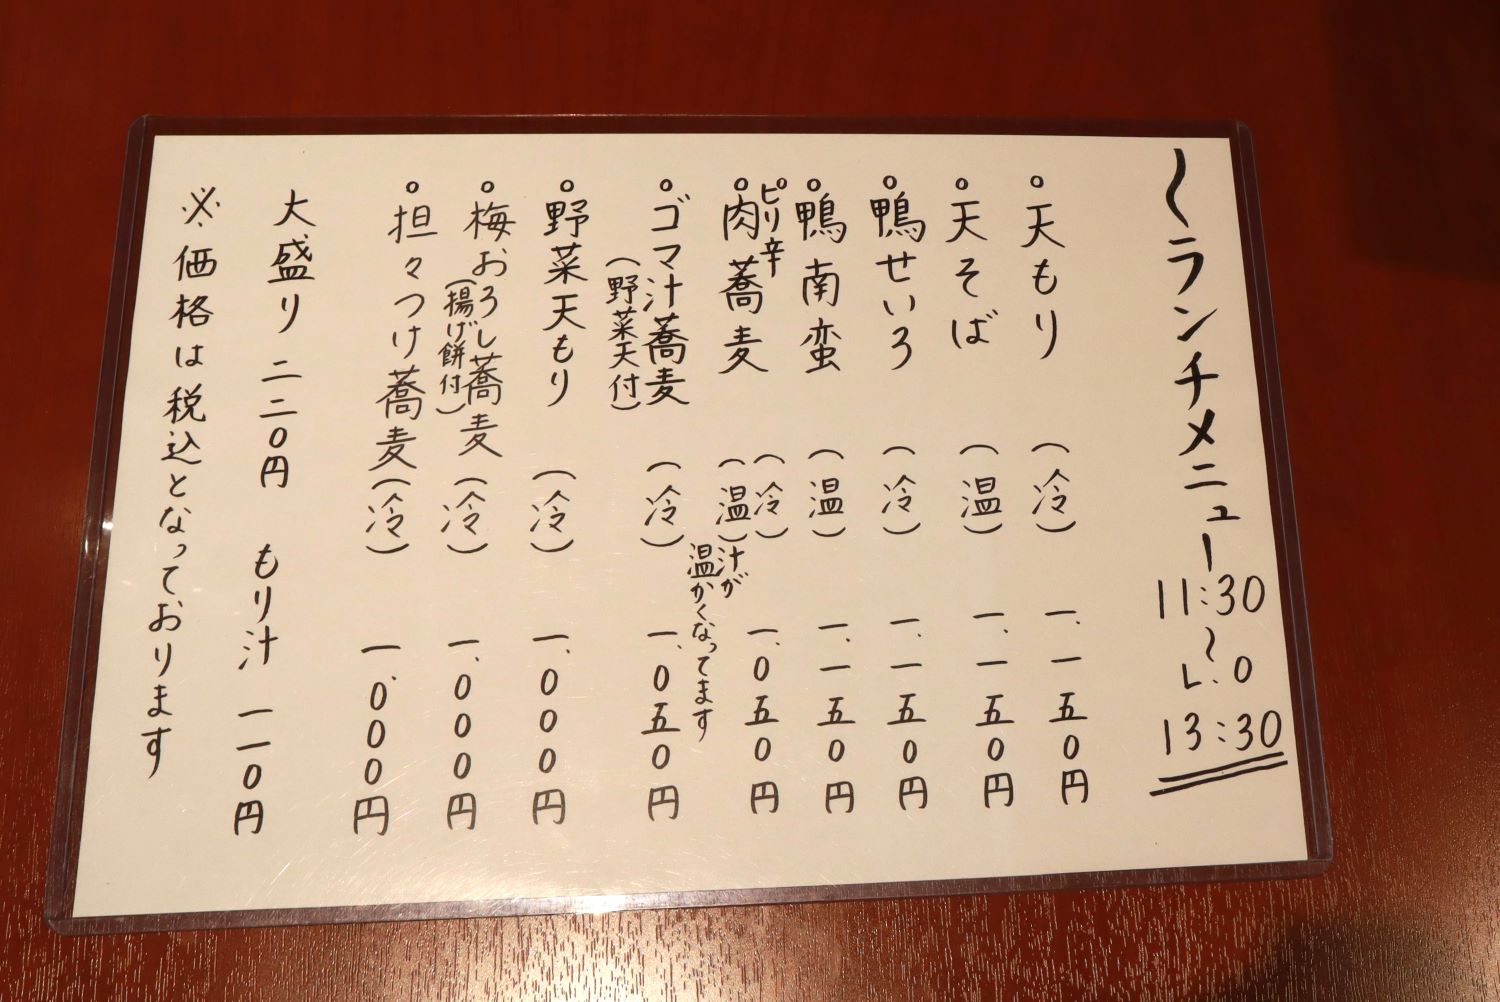 メニューは、本田さんの奥さんが手書きしている。